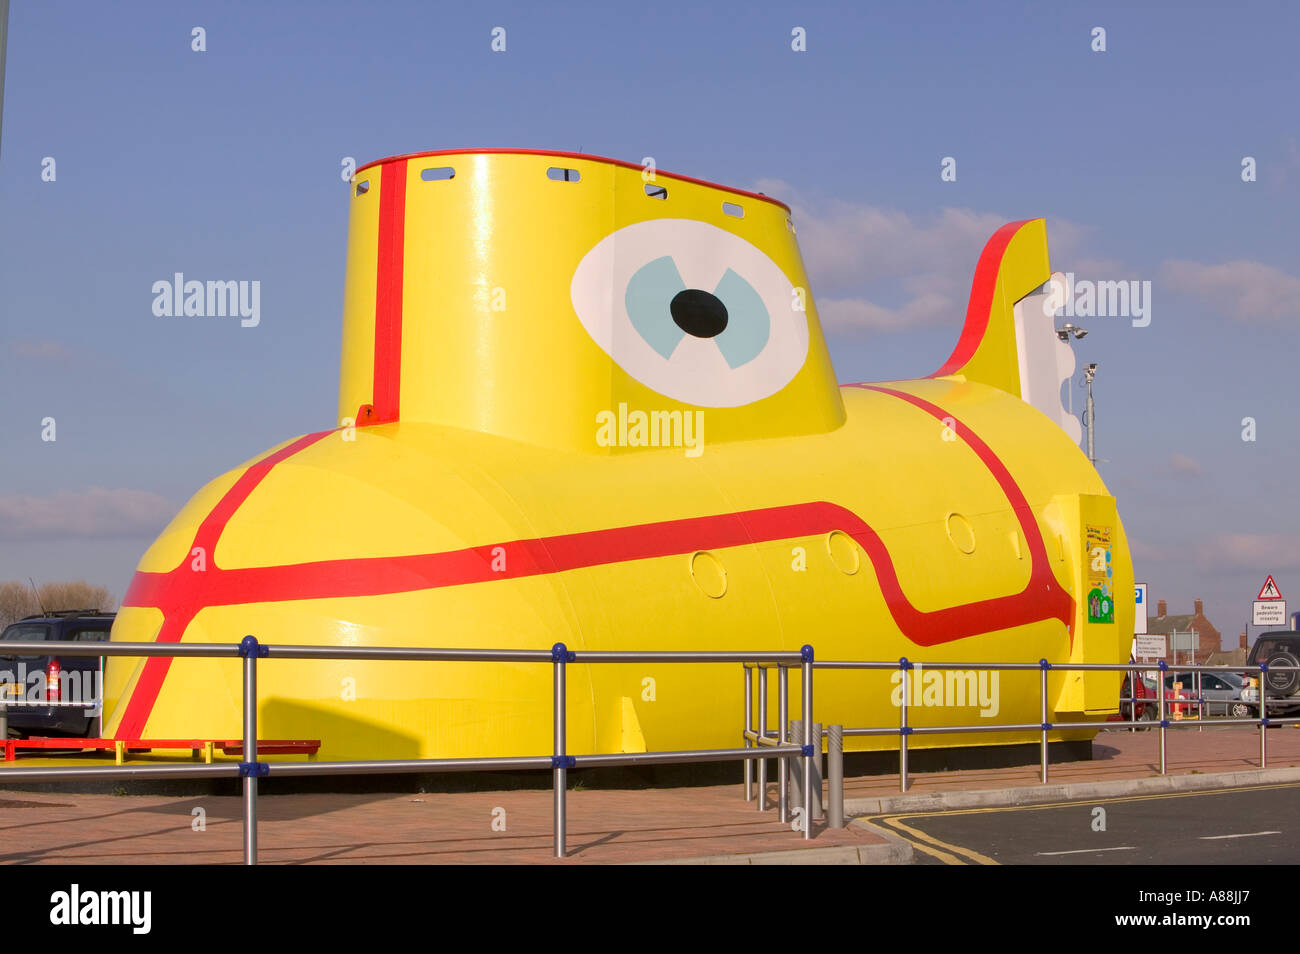 Une sculpture du sous-marin jaune des Beatles à l'aéroport john Lennon de Liverpool, Liverpool, Angleterre Banque D'Images